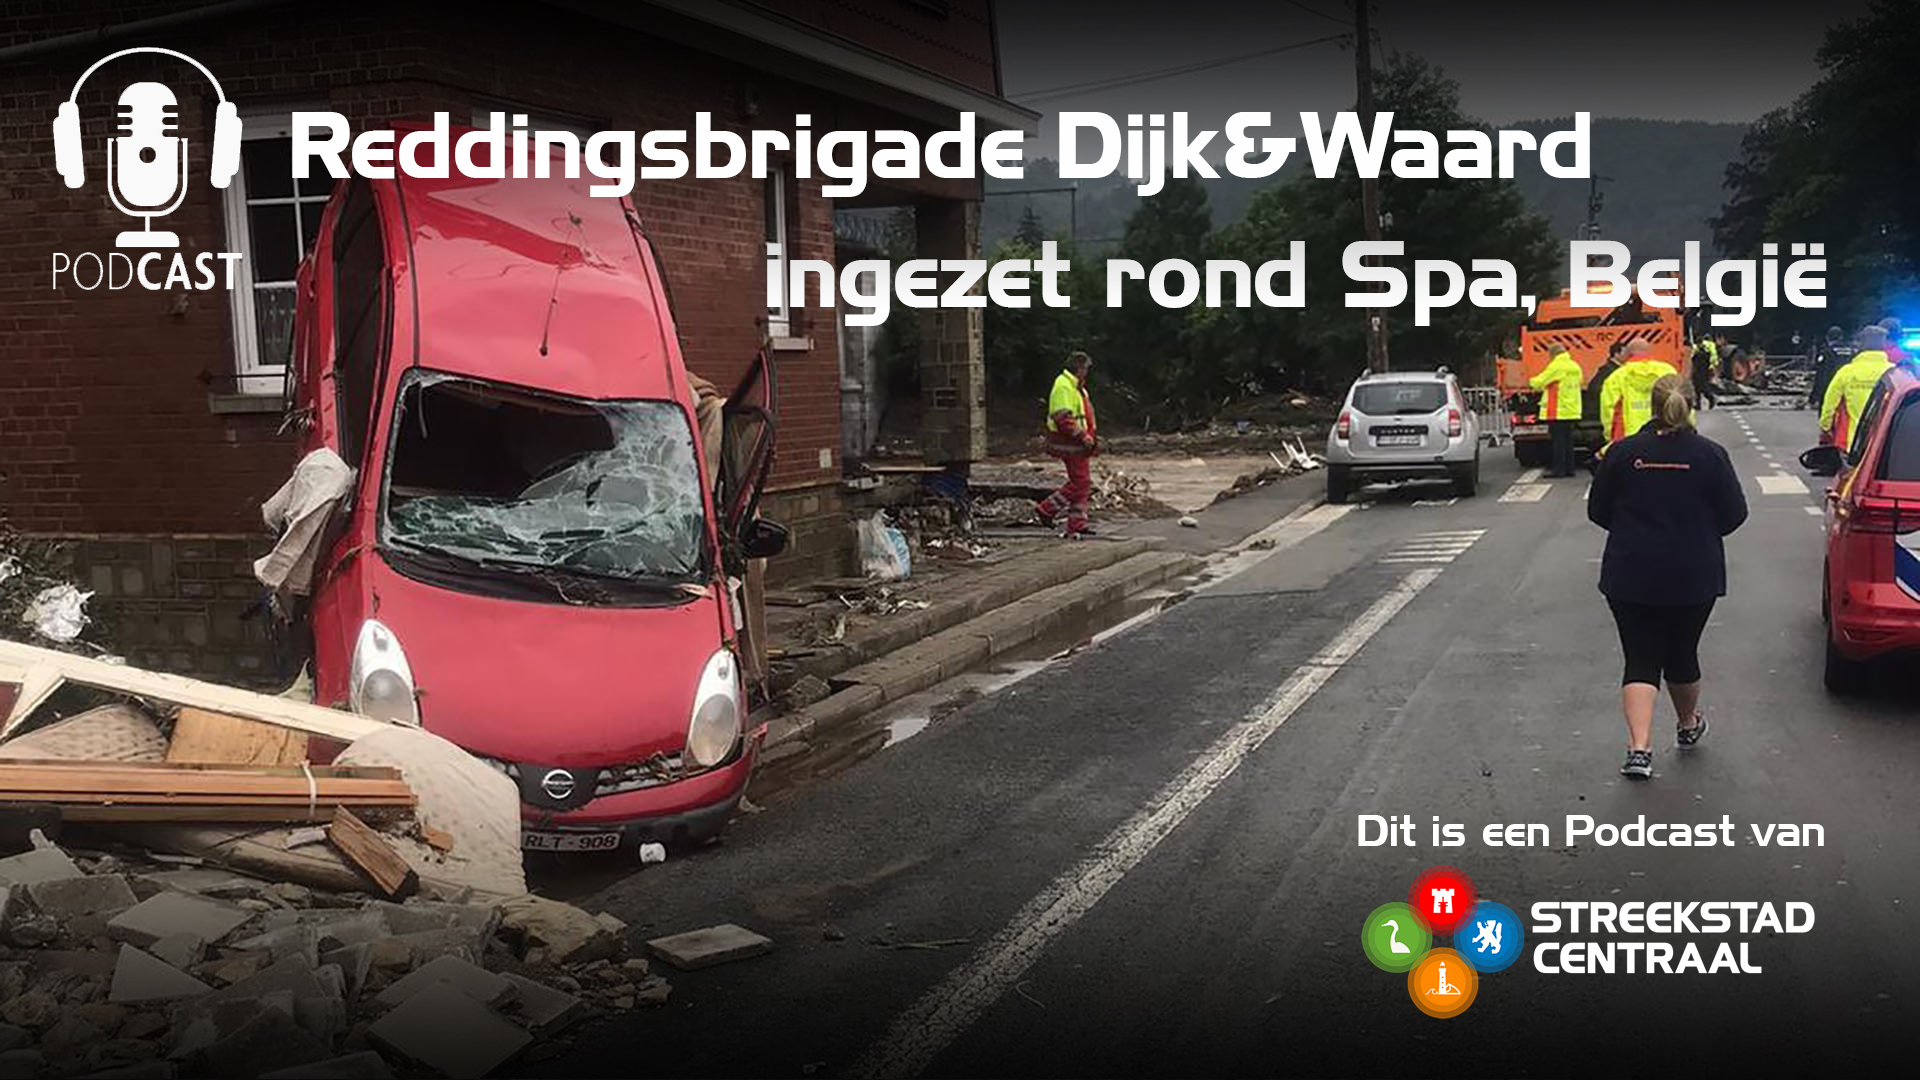 Christiaan Kranenbarg, Reddingsbrigade Dijk & Waard: “Verwoesting rond Spa, België”